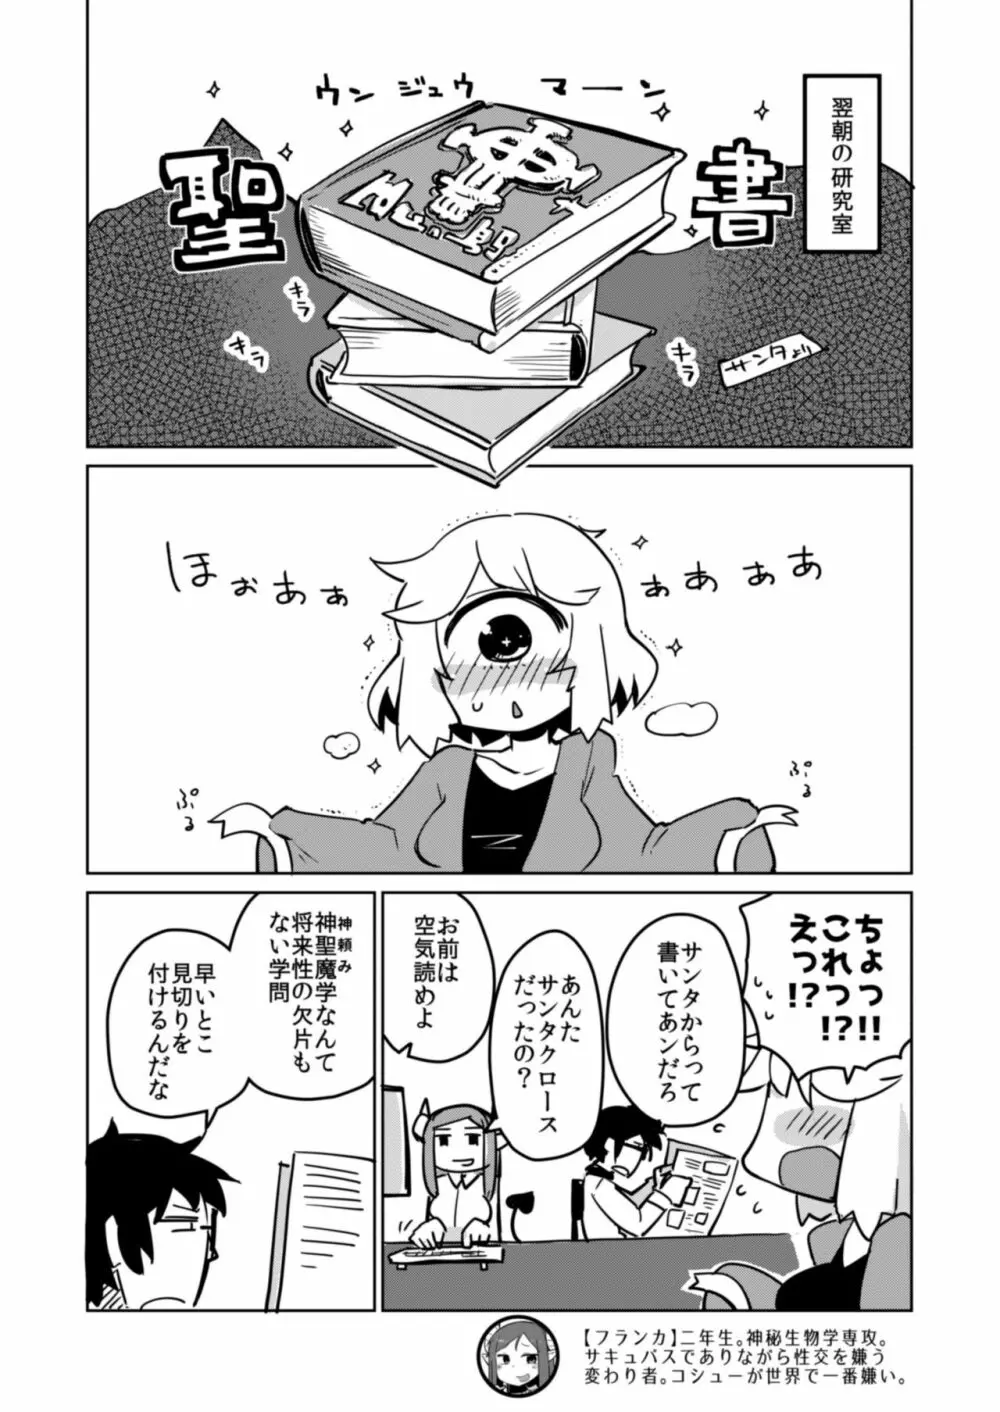 後輩の単眼ちゃん#5 - page13